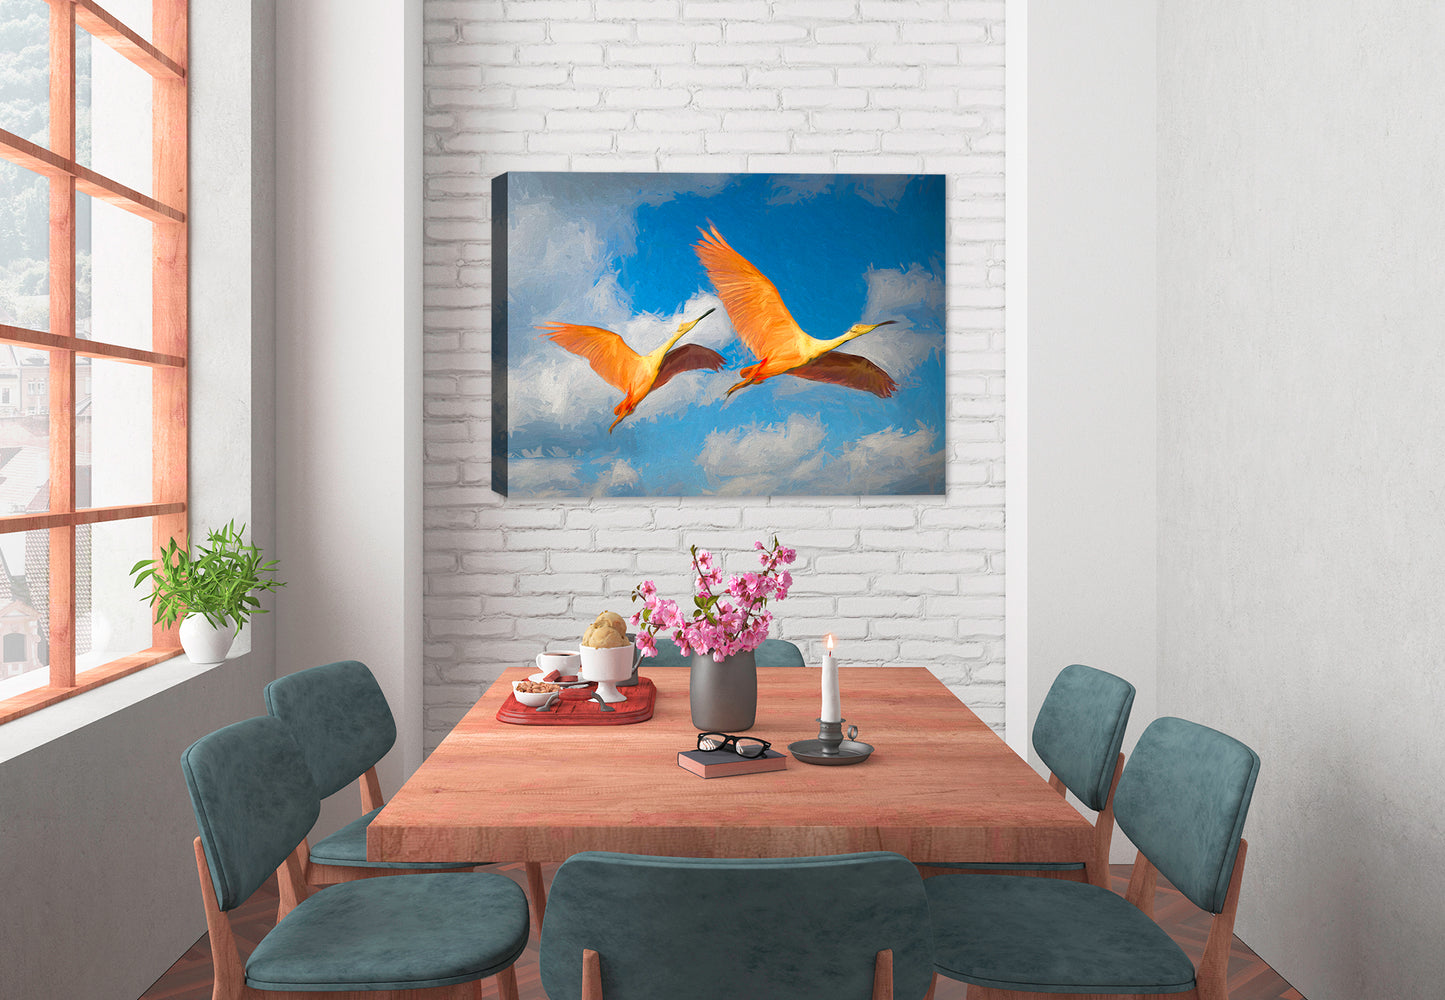 Spoonbills in Flight Painting - Canvas Art